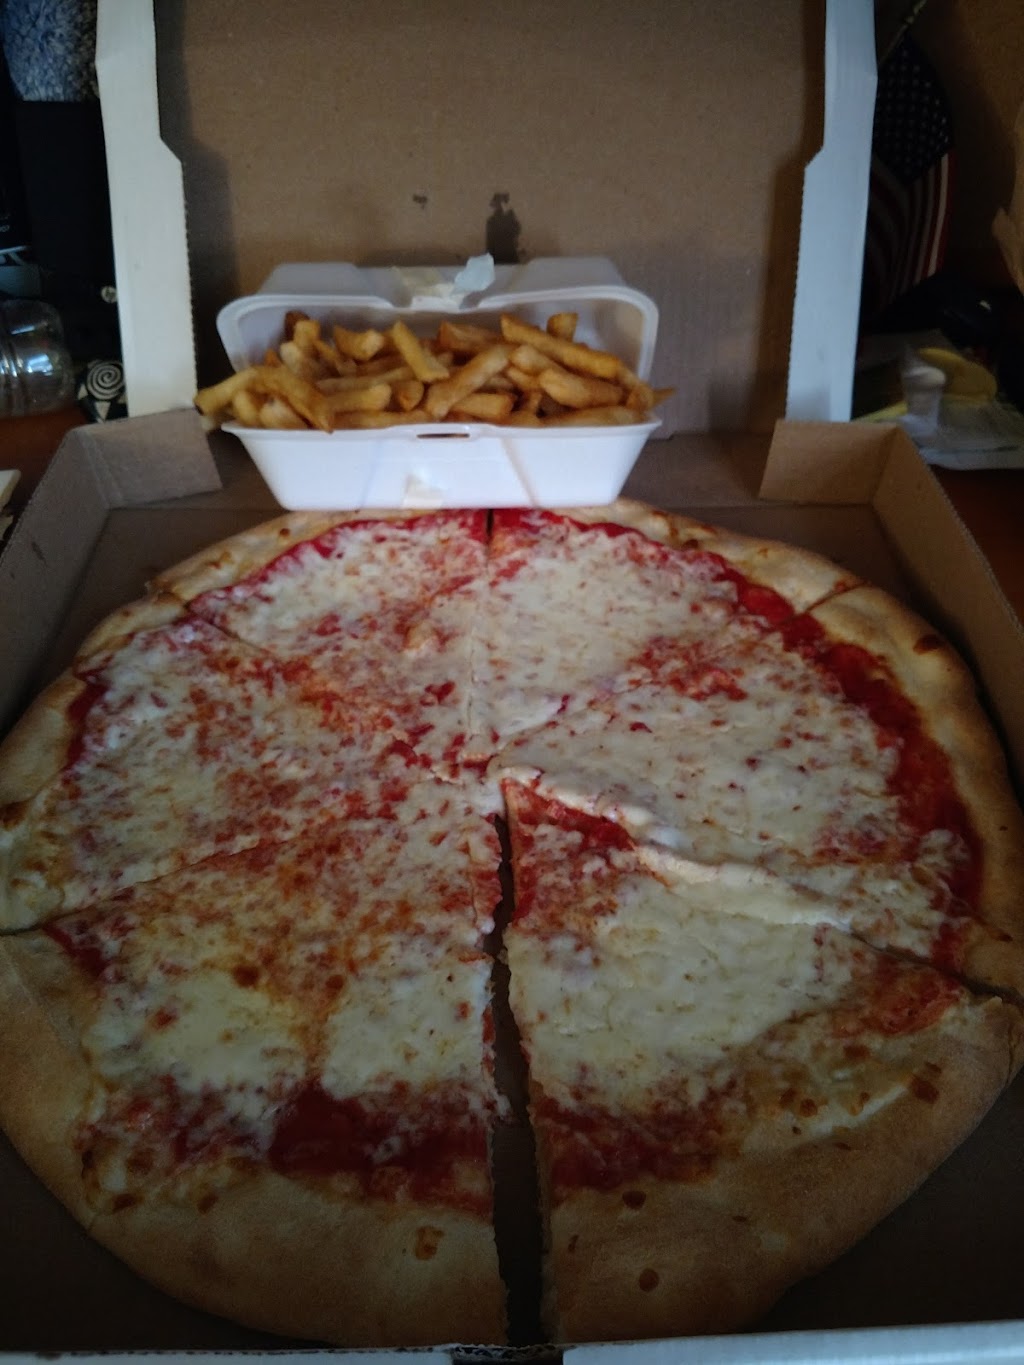 Joes Pizza | 108 Swedesboro Rd, Mullica Hill, NJ 08062 | Phone: (856) 223-9921